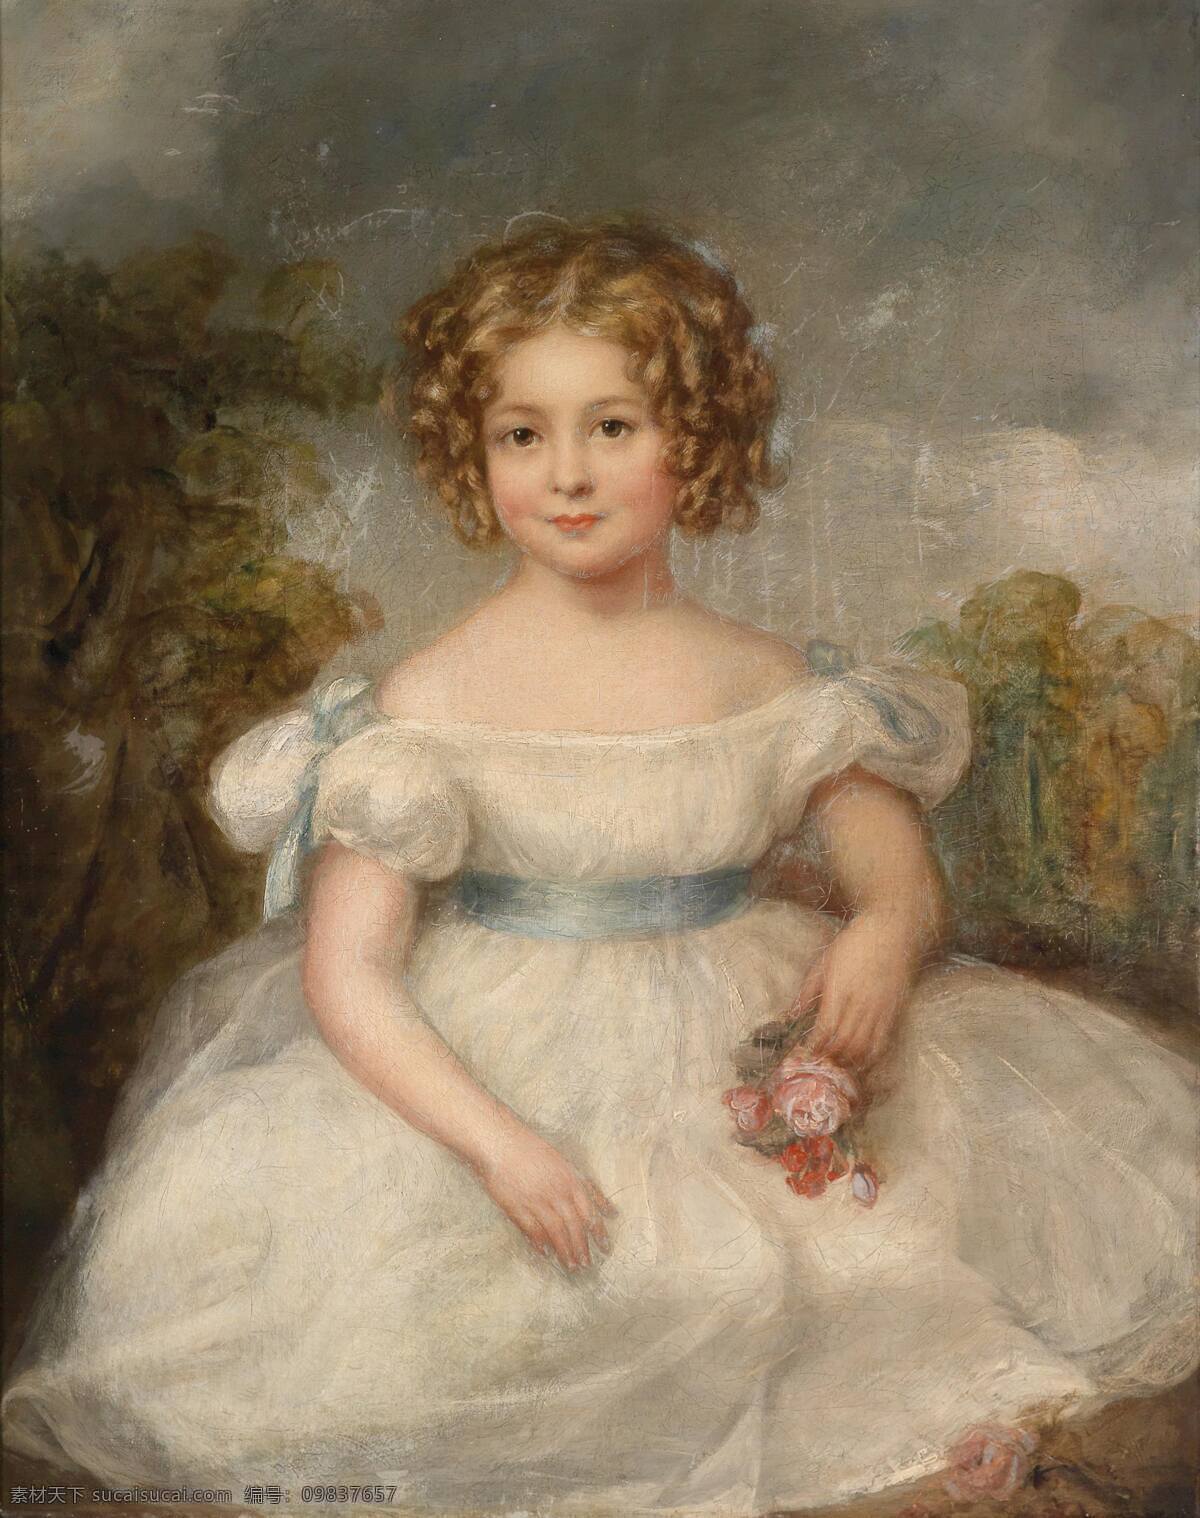 小姑娘 贵族之家 小女孩儿 白色连衣裙 地上 树木 19世纪油画 油画 绘画书法 文化艺术